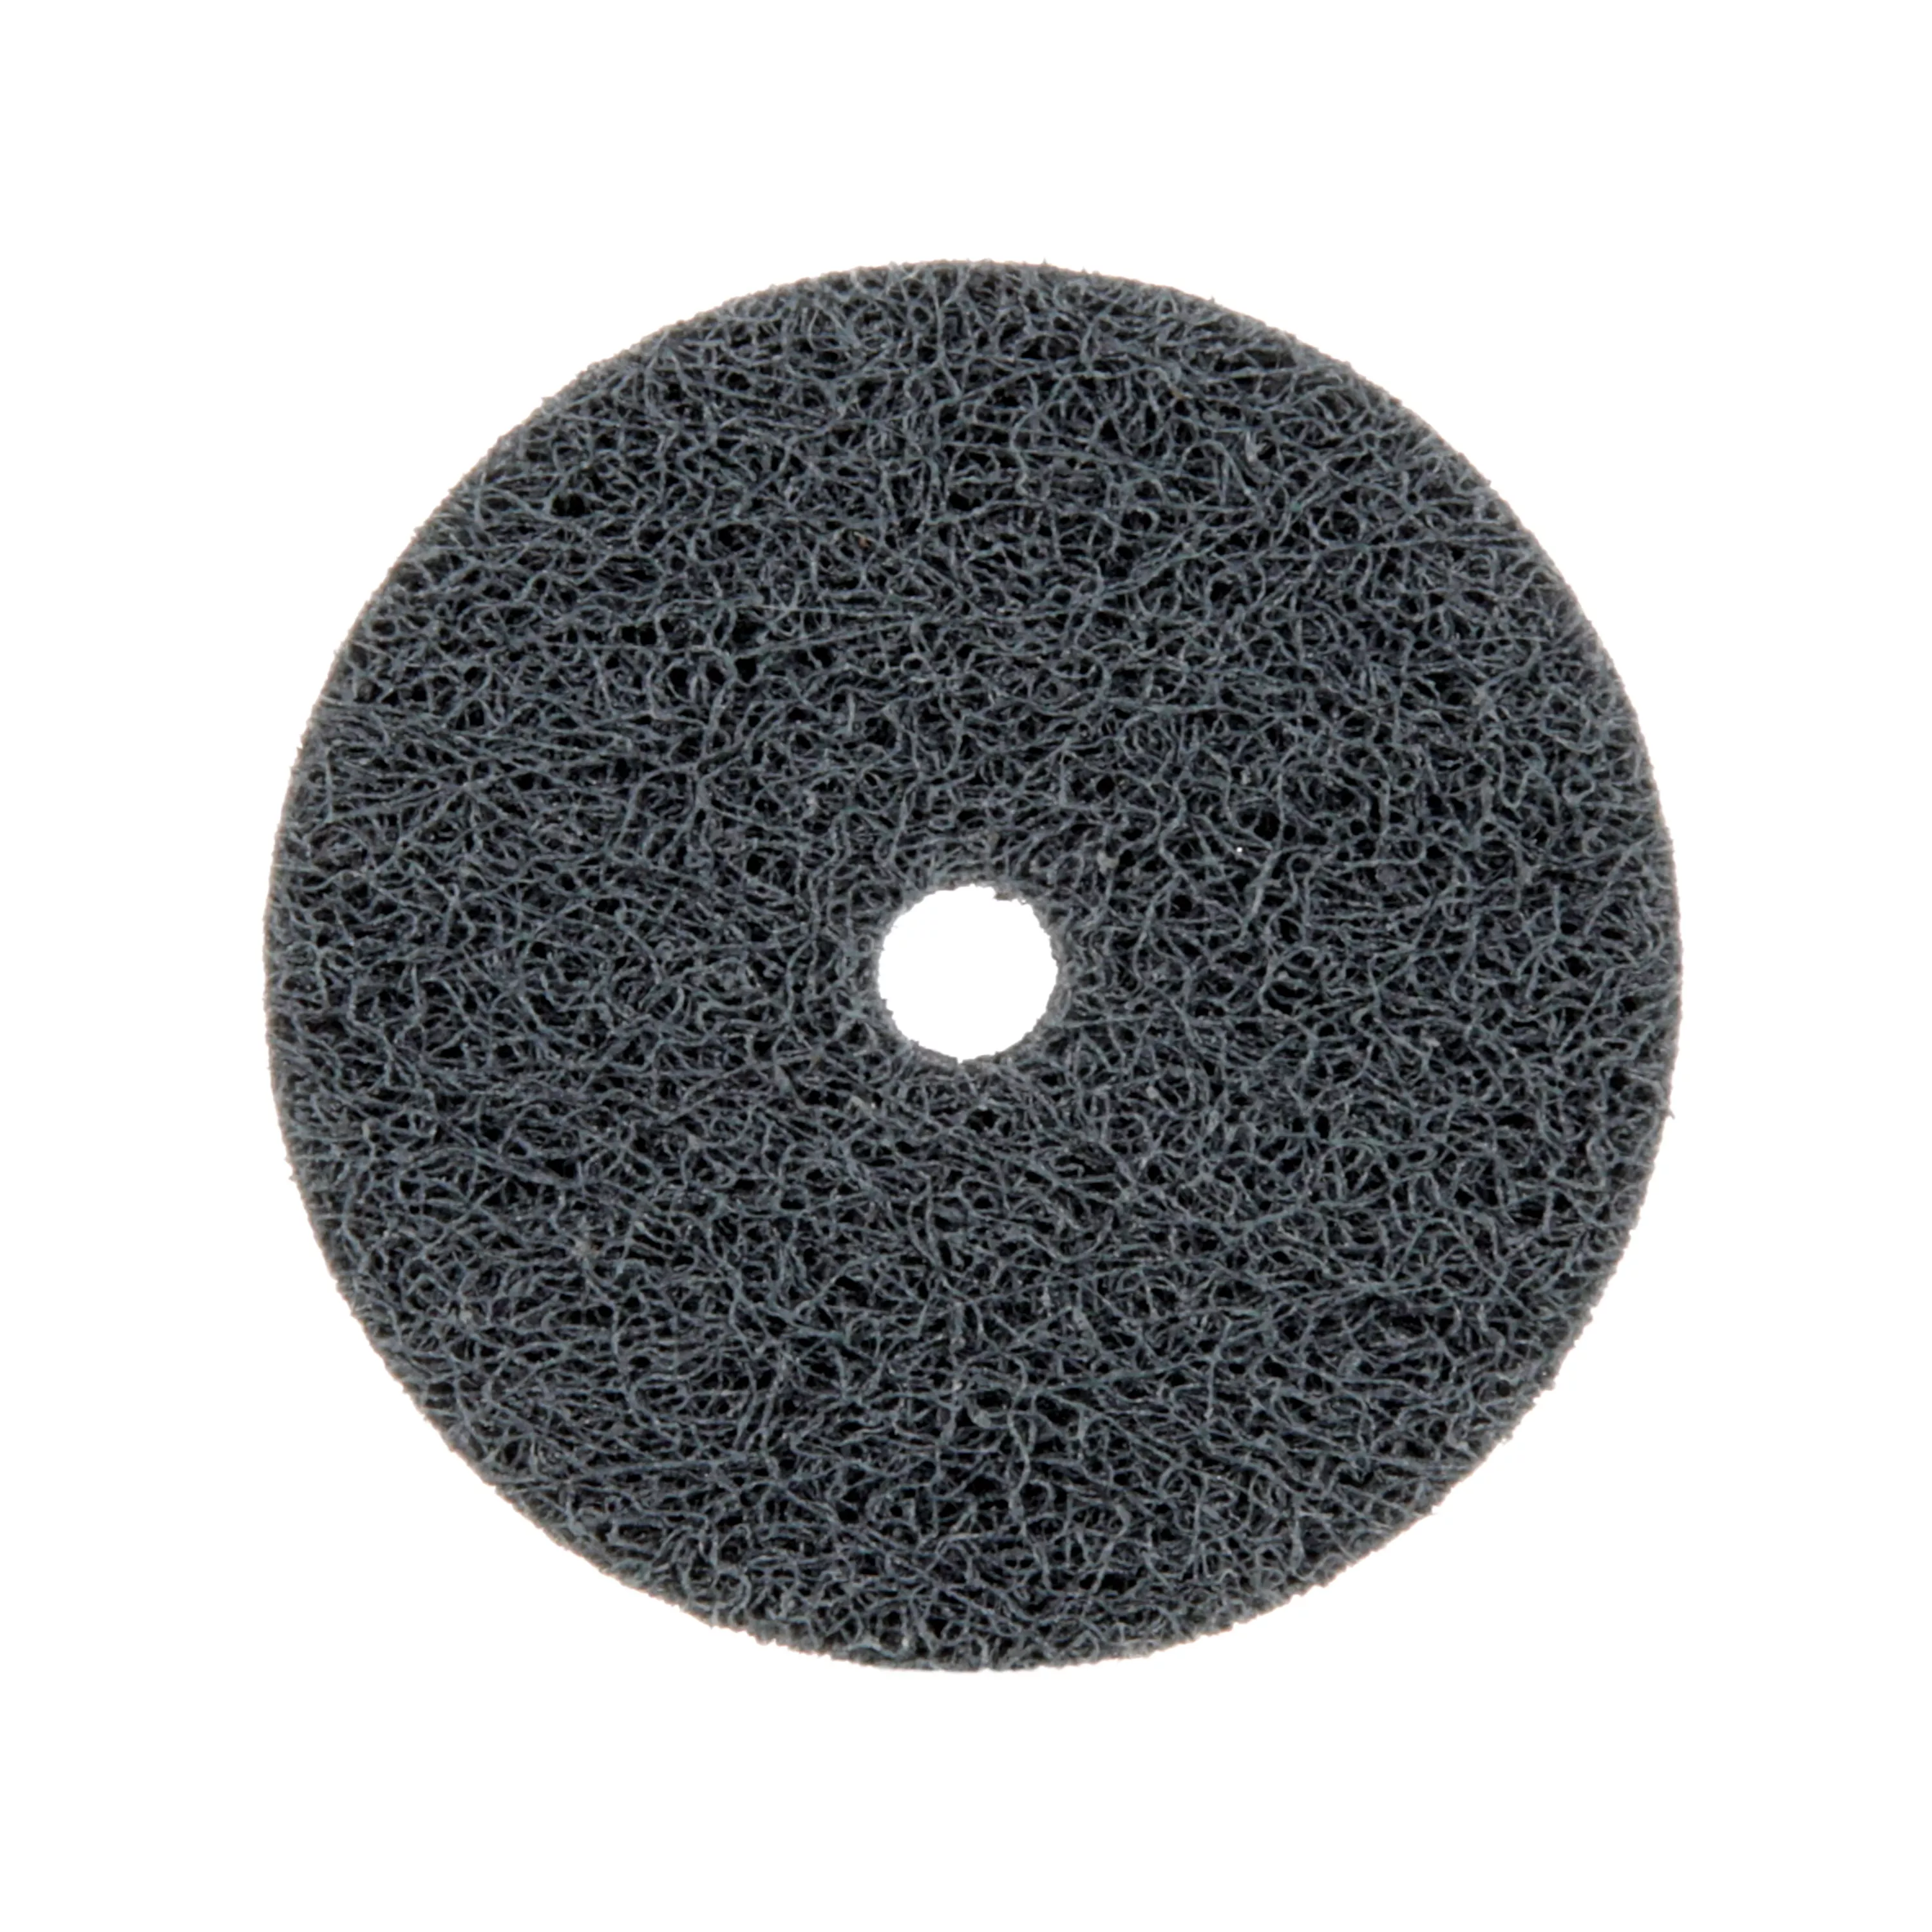 Standard Abrasives™ S/C Unitized Wheel 853210, 532 2 in x 1/4 in x 1/4
in, 10 ea/Case